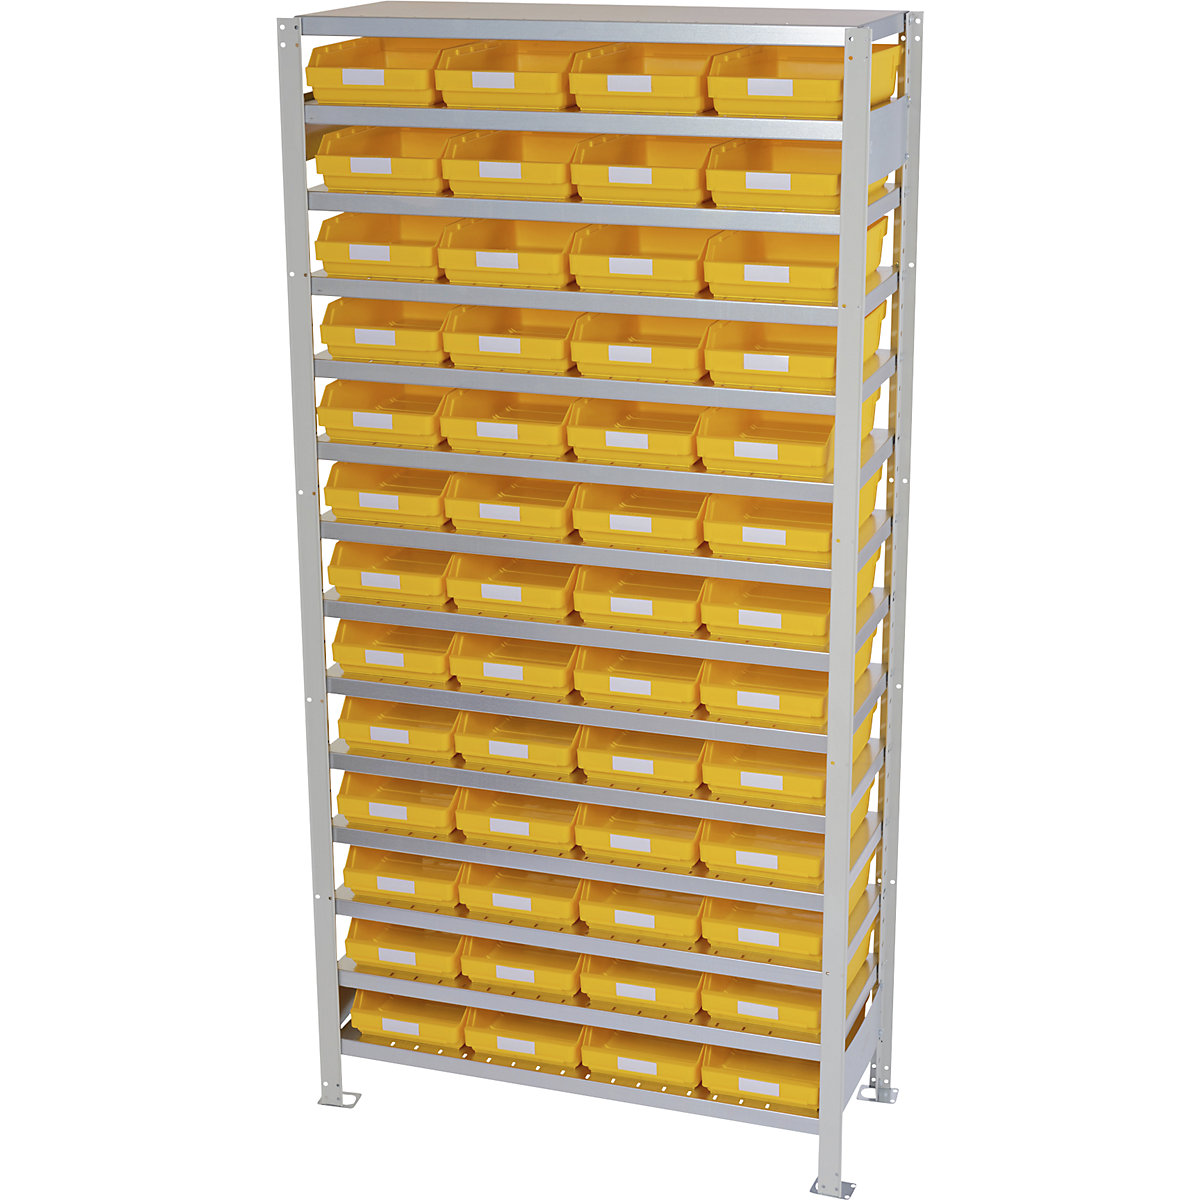 Összedugaszolós állvány dobozokkal – STEMO, állványmagasság 2100 mm, alapállvány, 500 mm mély, 52 sárga doboz-11